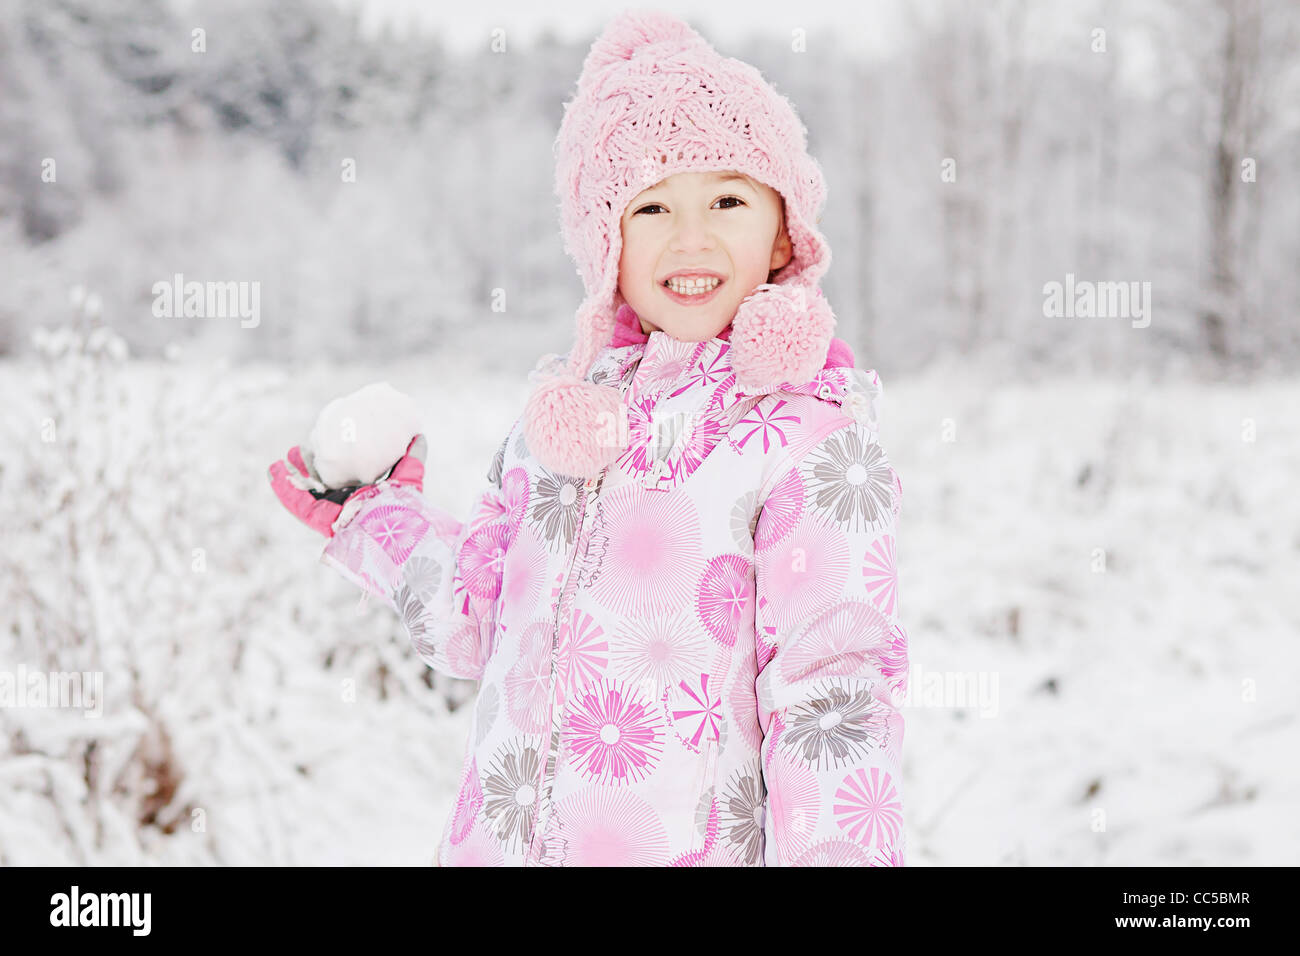 Un retrato de una niña con una bola de nieve Foto de stock